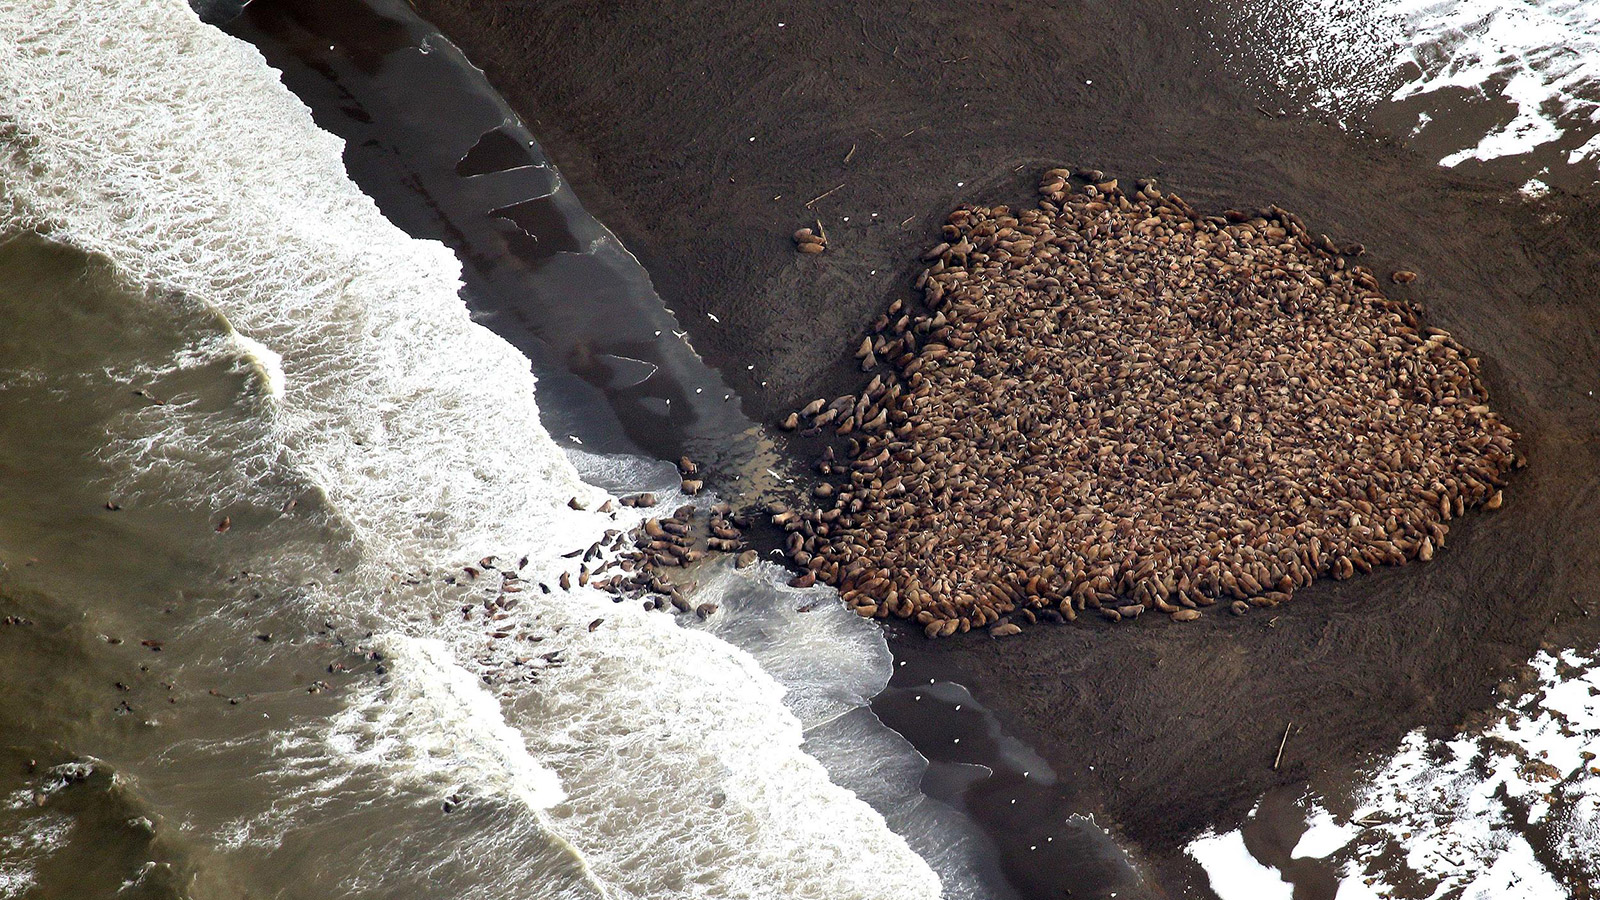 Walruses on shore in Alaska